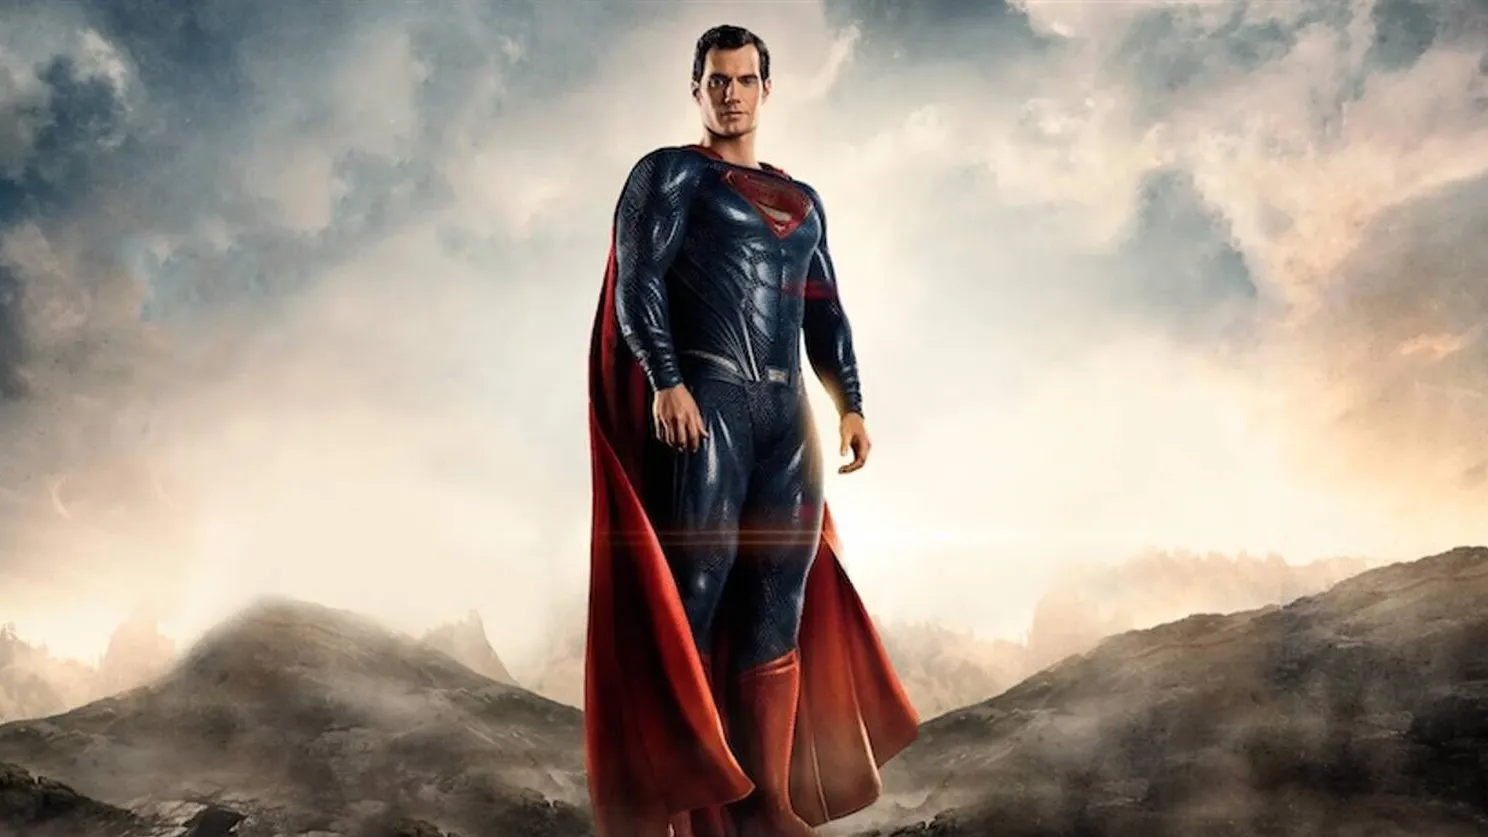 Diebe verkaufen geklaute Unreal Engine 5 Superman-Demo Titel